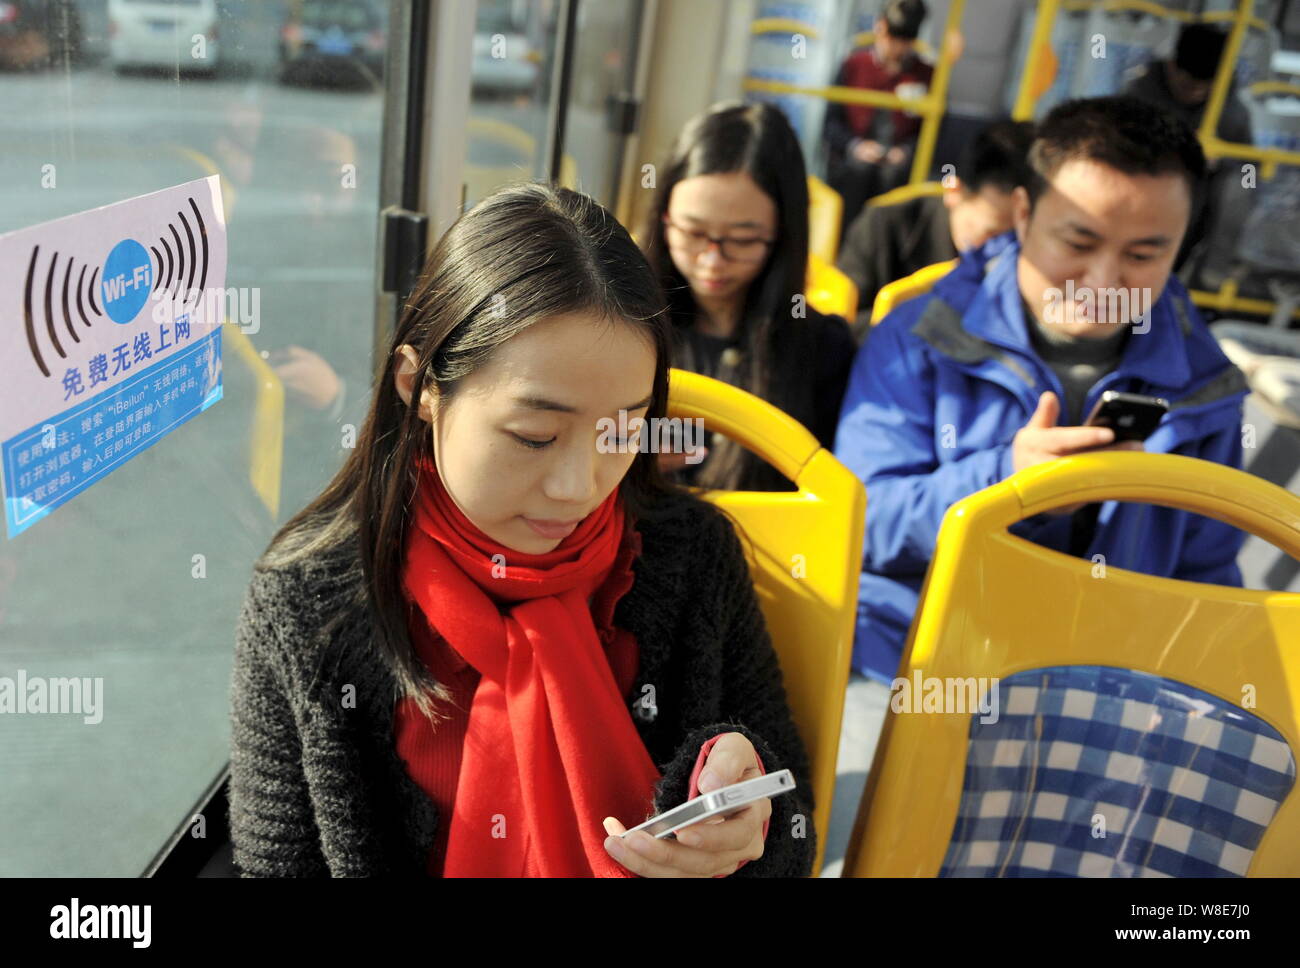 FILE--chino pasajeros utilizan sus para navegar por Internet a través de la red wifi gratuita en un autobús en la ciudad de Ningbo, Zhejiang de China oriental pro Fotografía stock